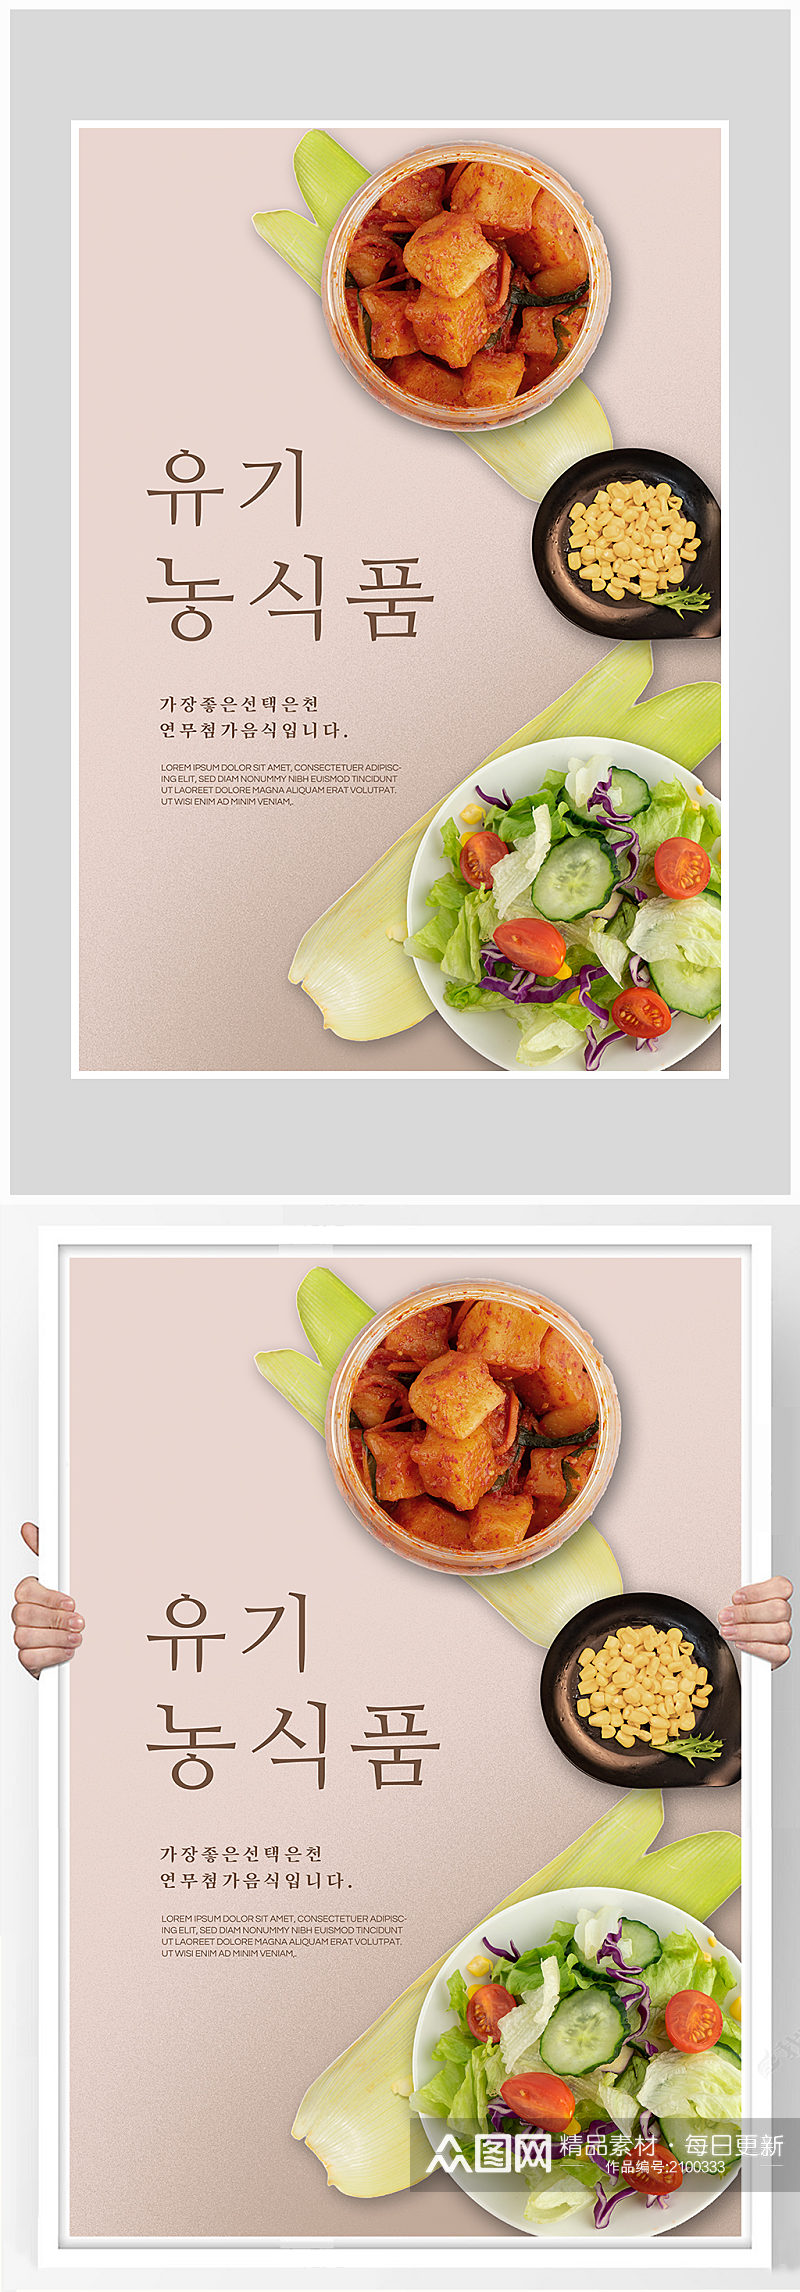 创意简约蔬菜沙拉海报设计素材